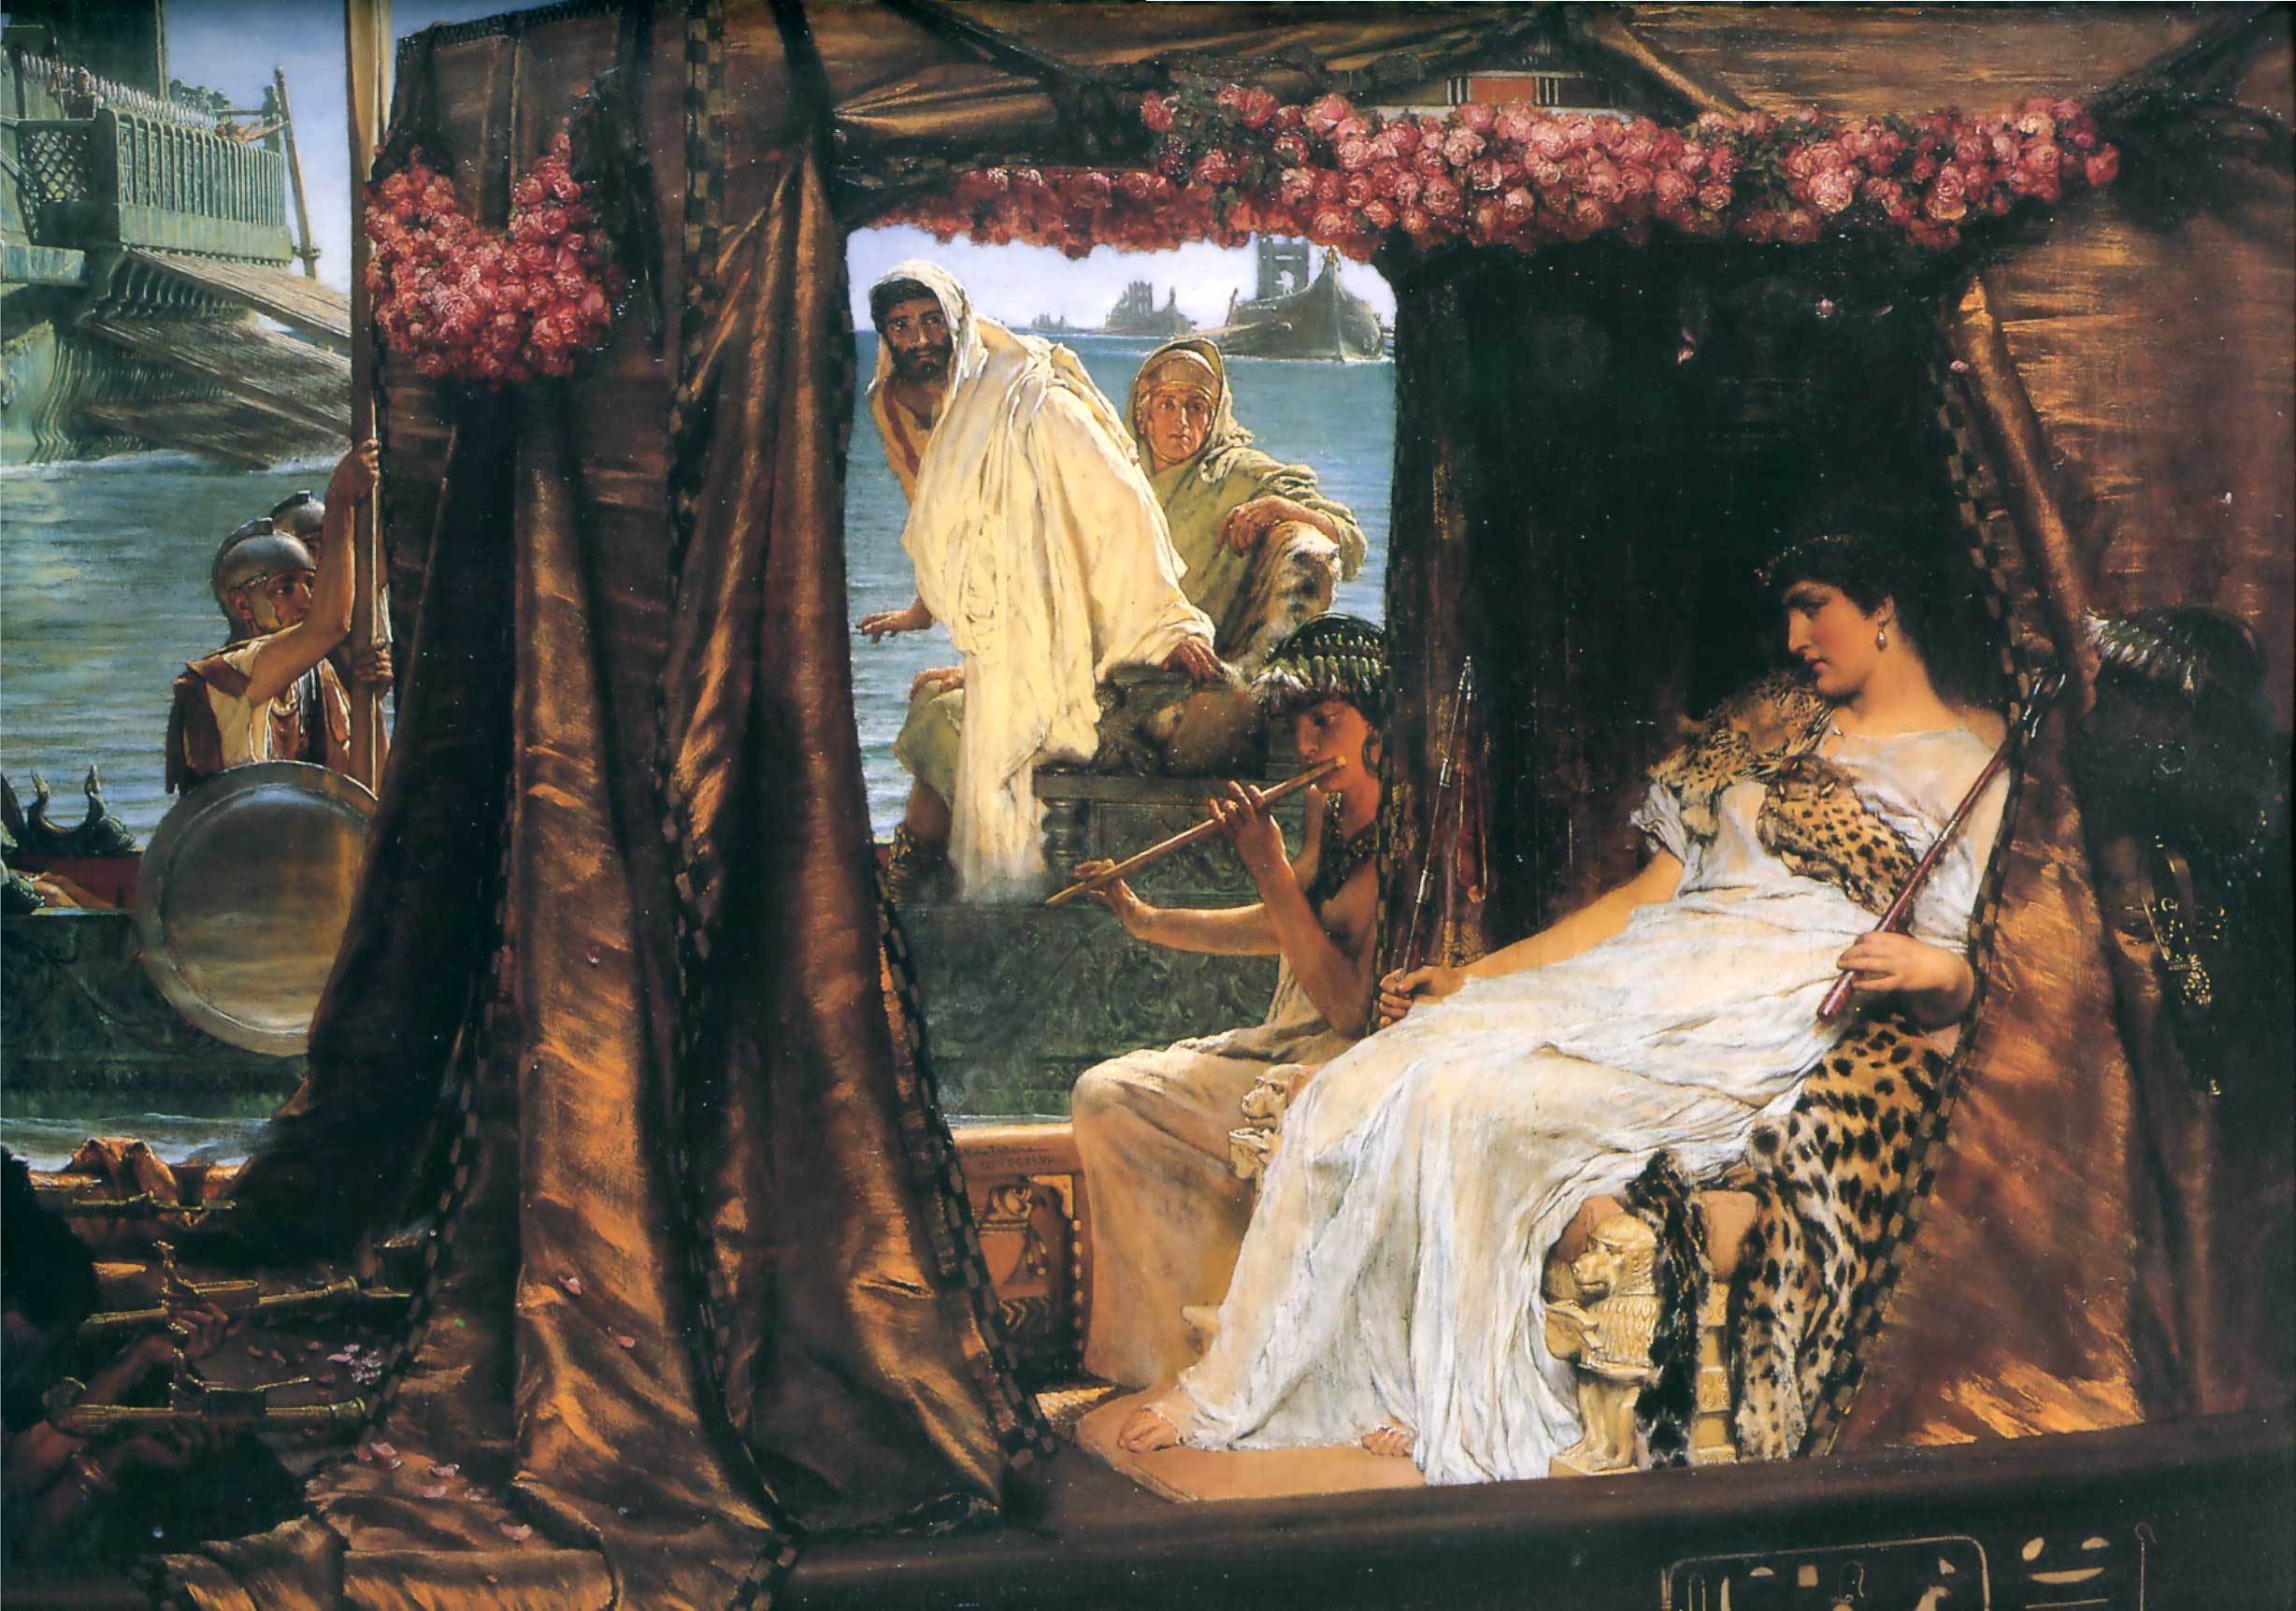 L'incontro di Antonio e Cleopatra by Lawrence Alma-Tadema - 1885 - 65.5 × 92 cm collezione privata